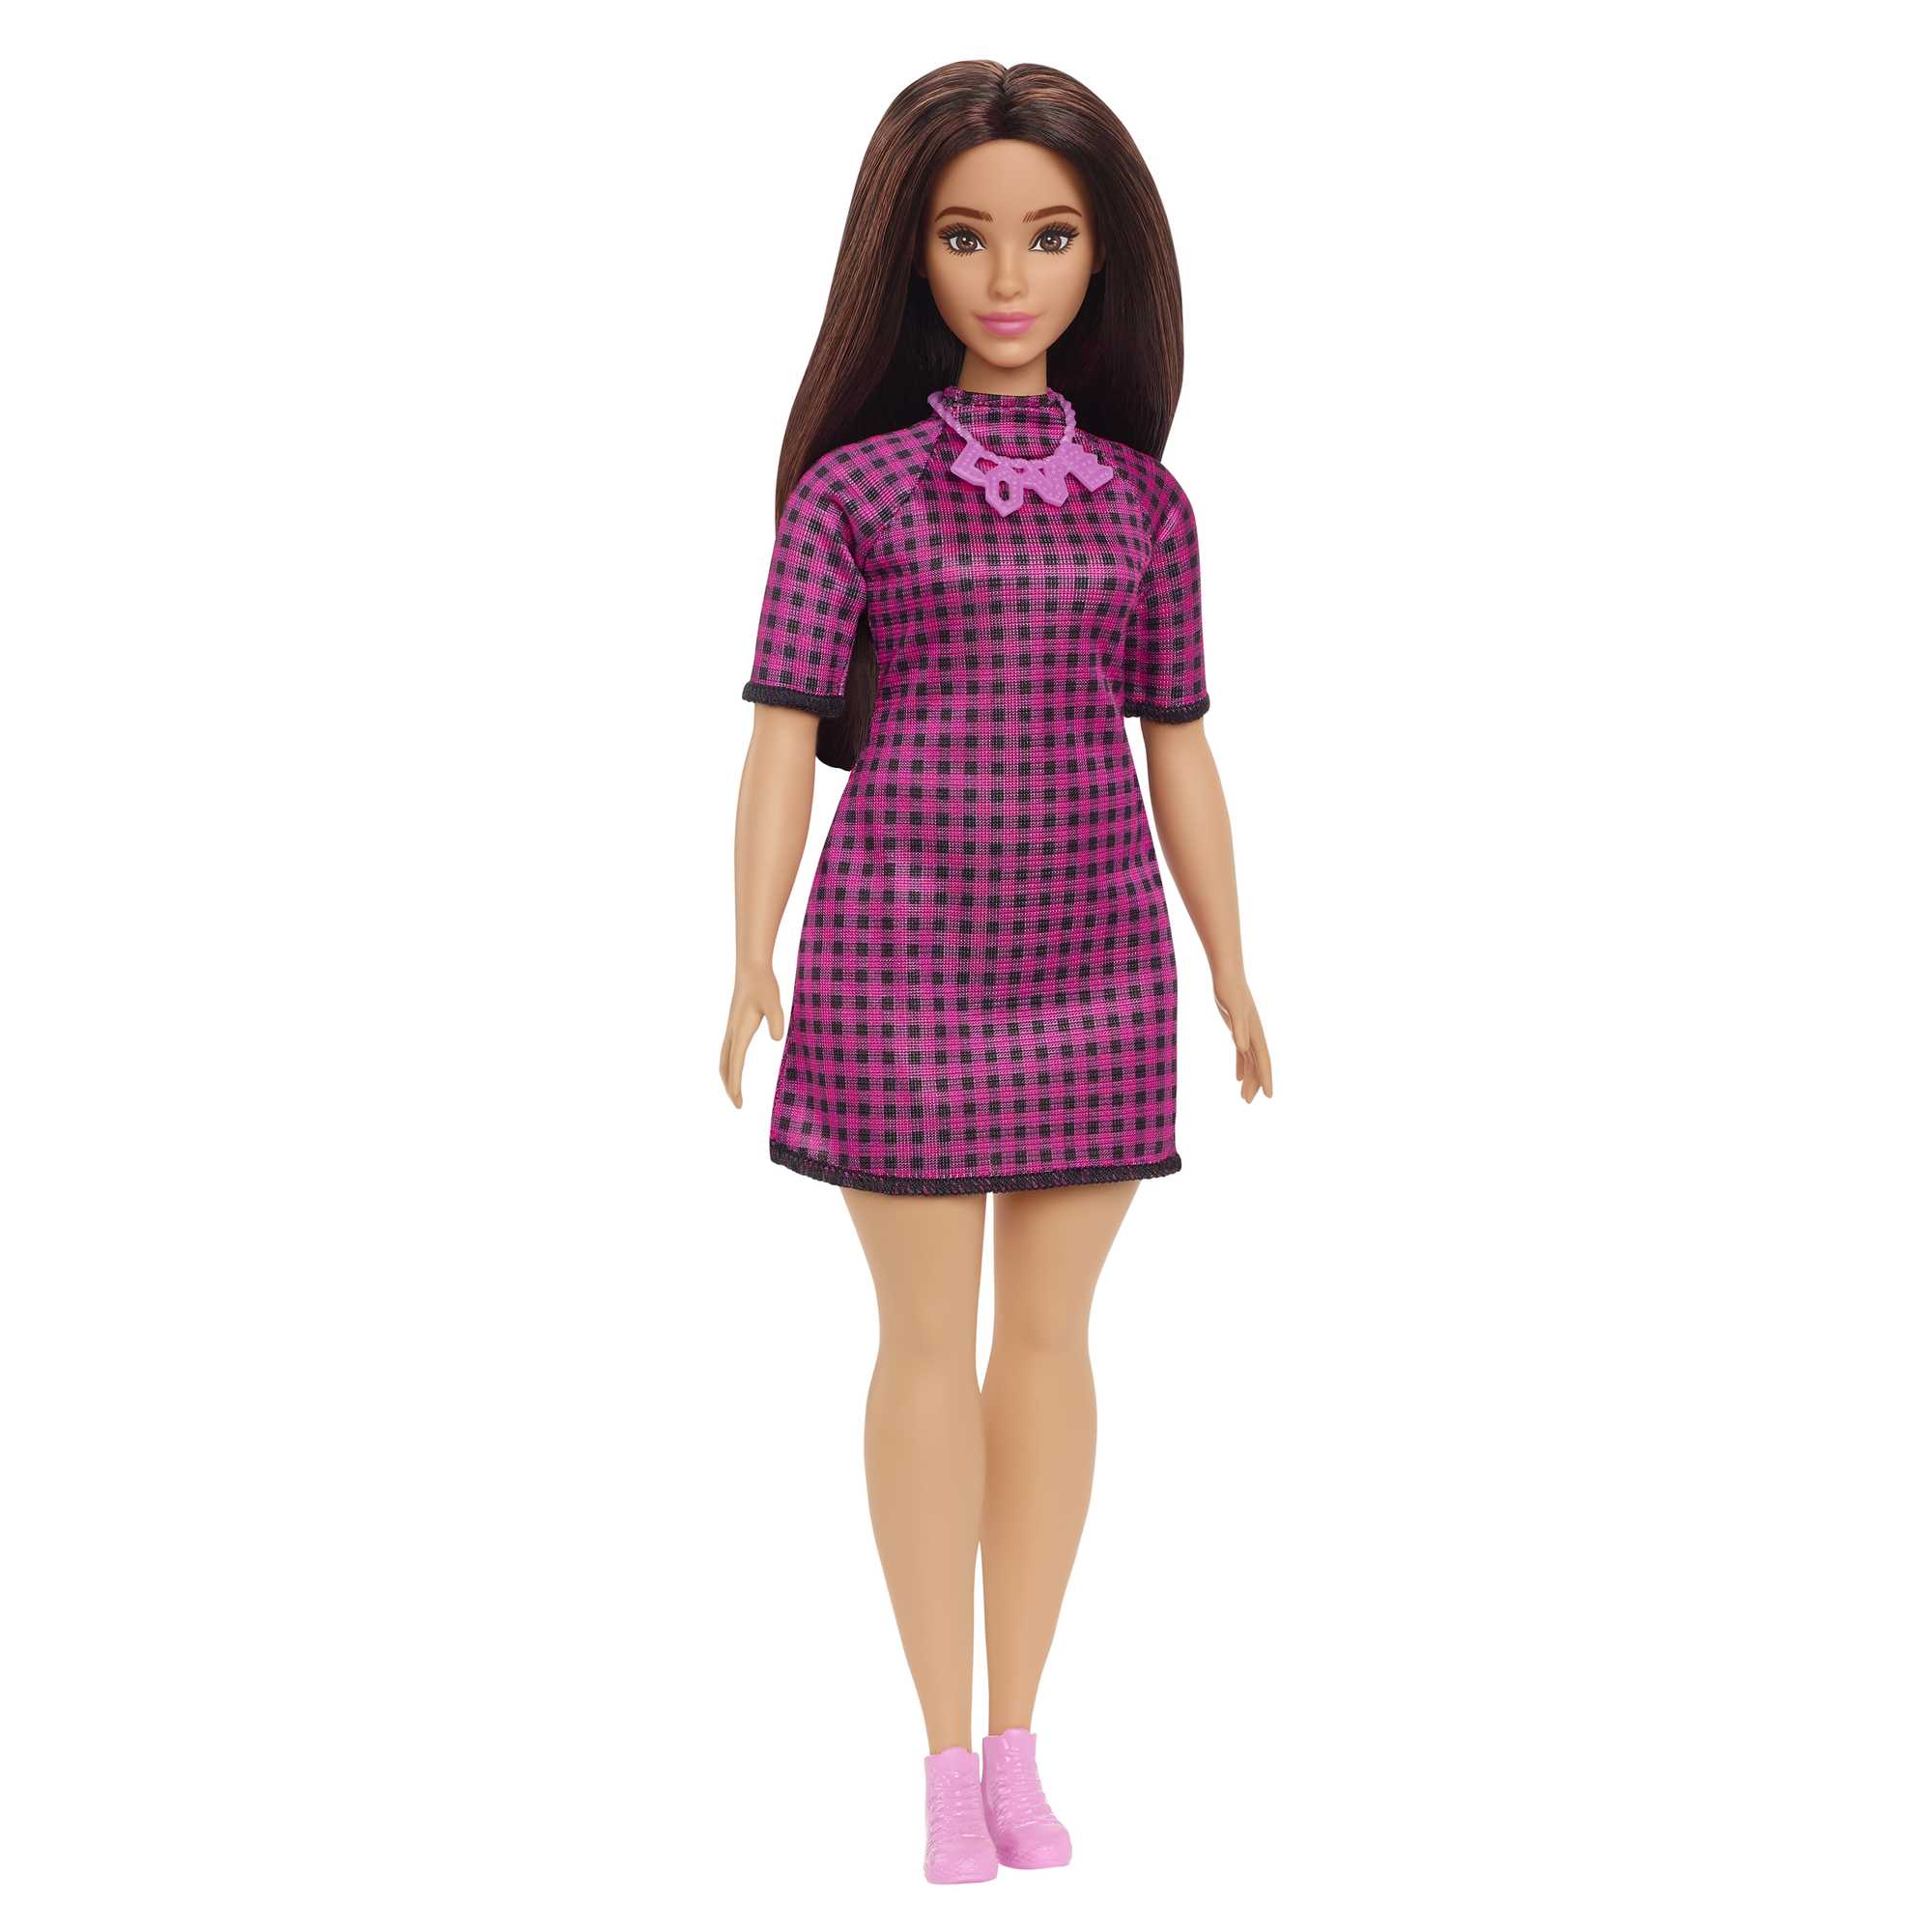 Кукла Mattel Barbie с длинными волосами брюнетка HBV20 кукла барби игра с модой брюнетка в оранжевом платье с очками